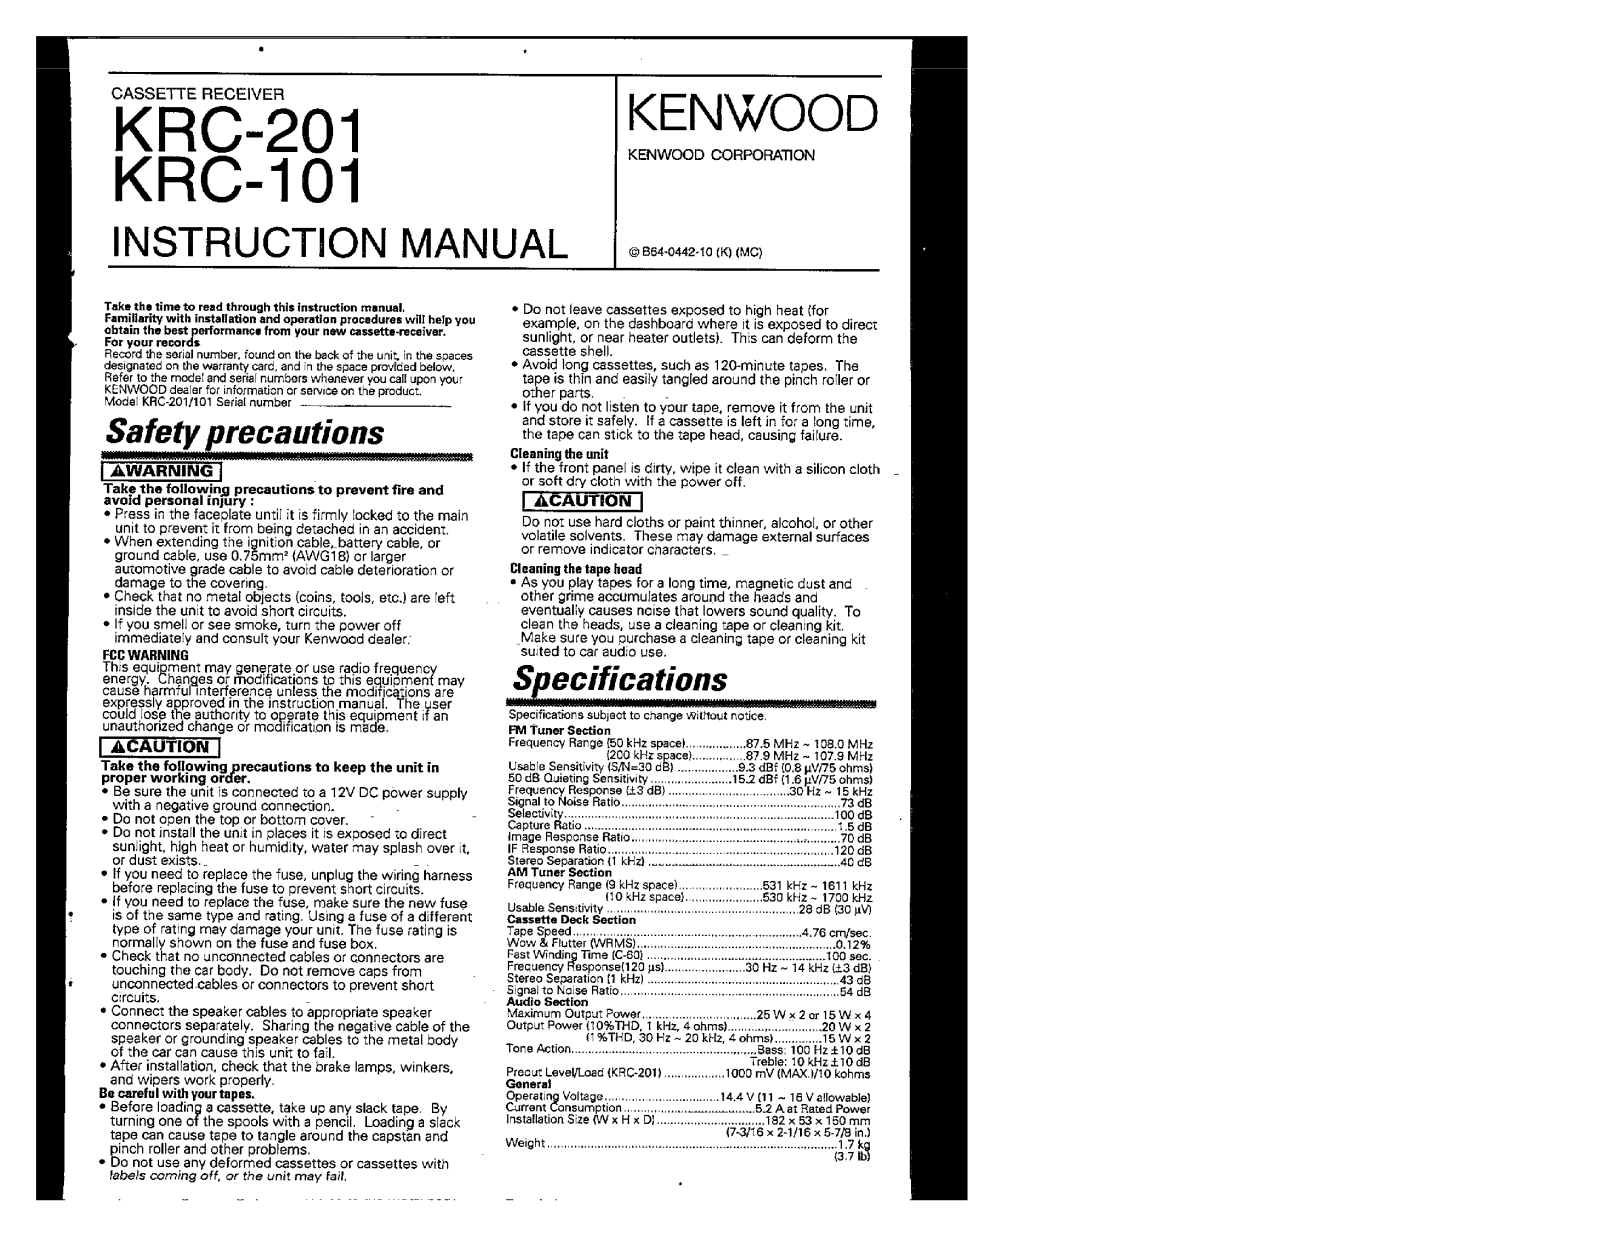 Kenwood KRC-101, KRC-201 Owner's Manual